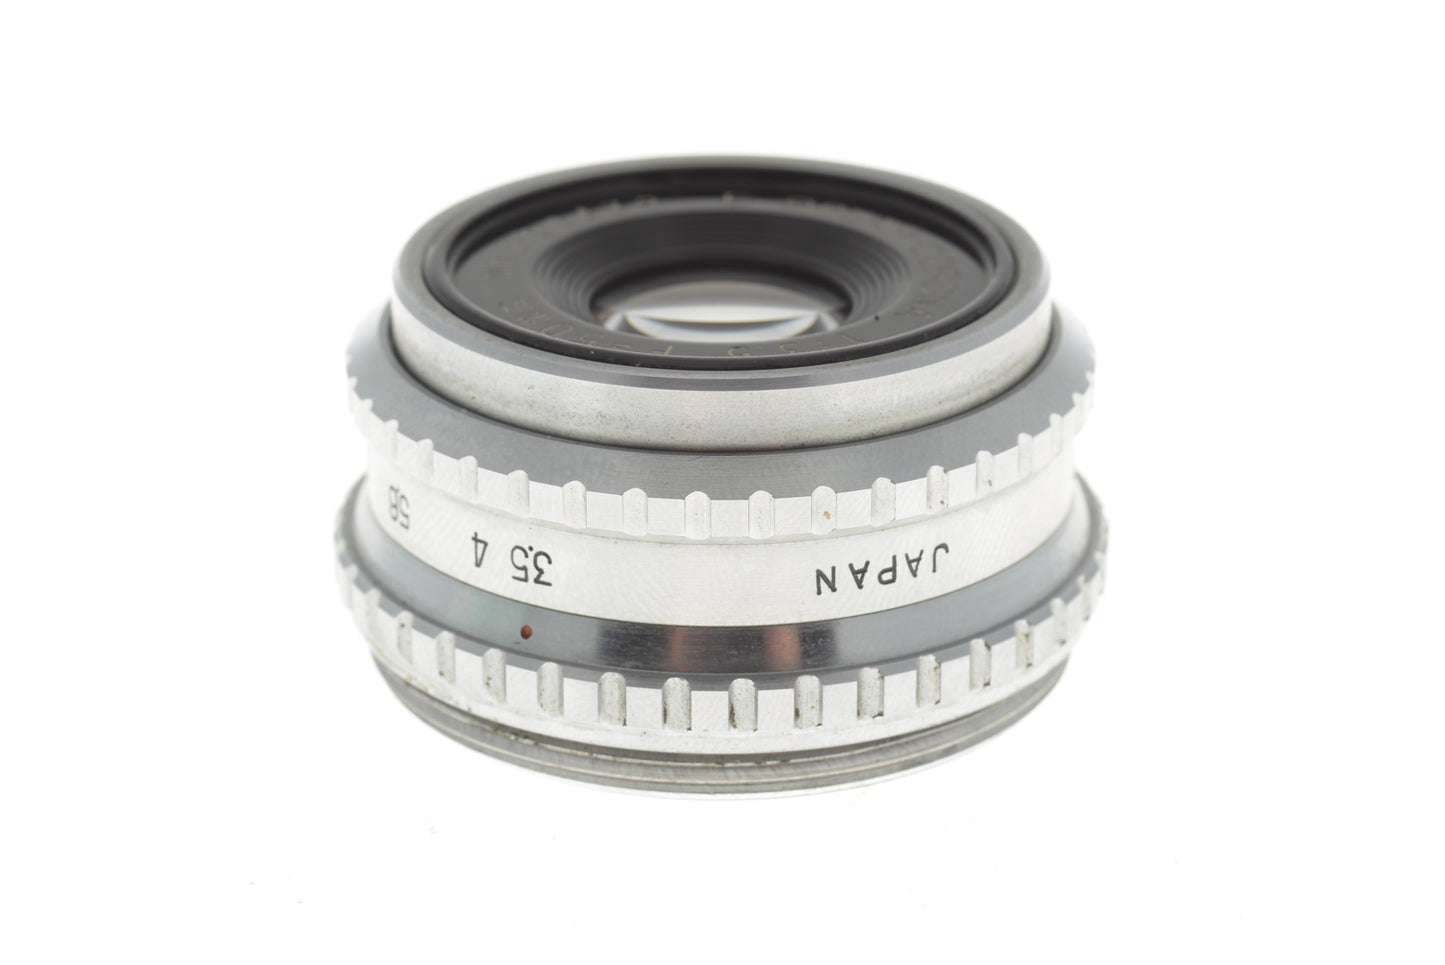 E-Ocean 50mm f3.5 Corona - Lens